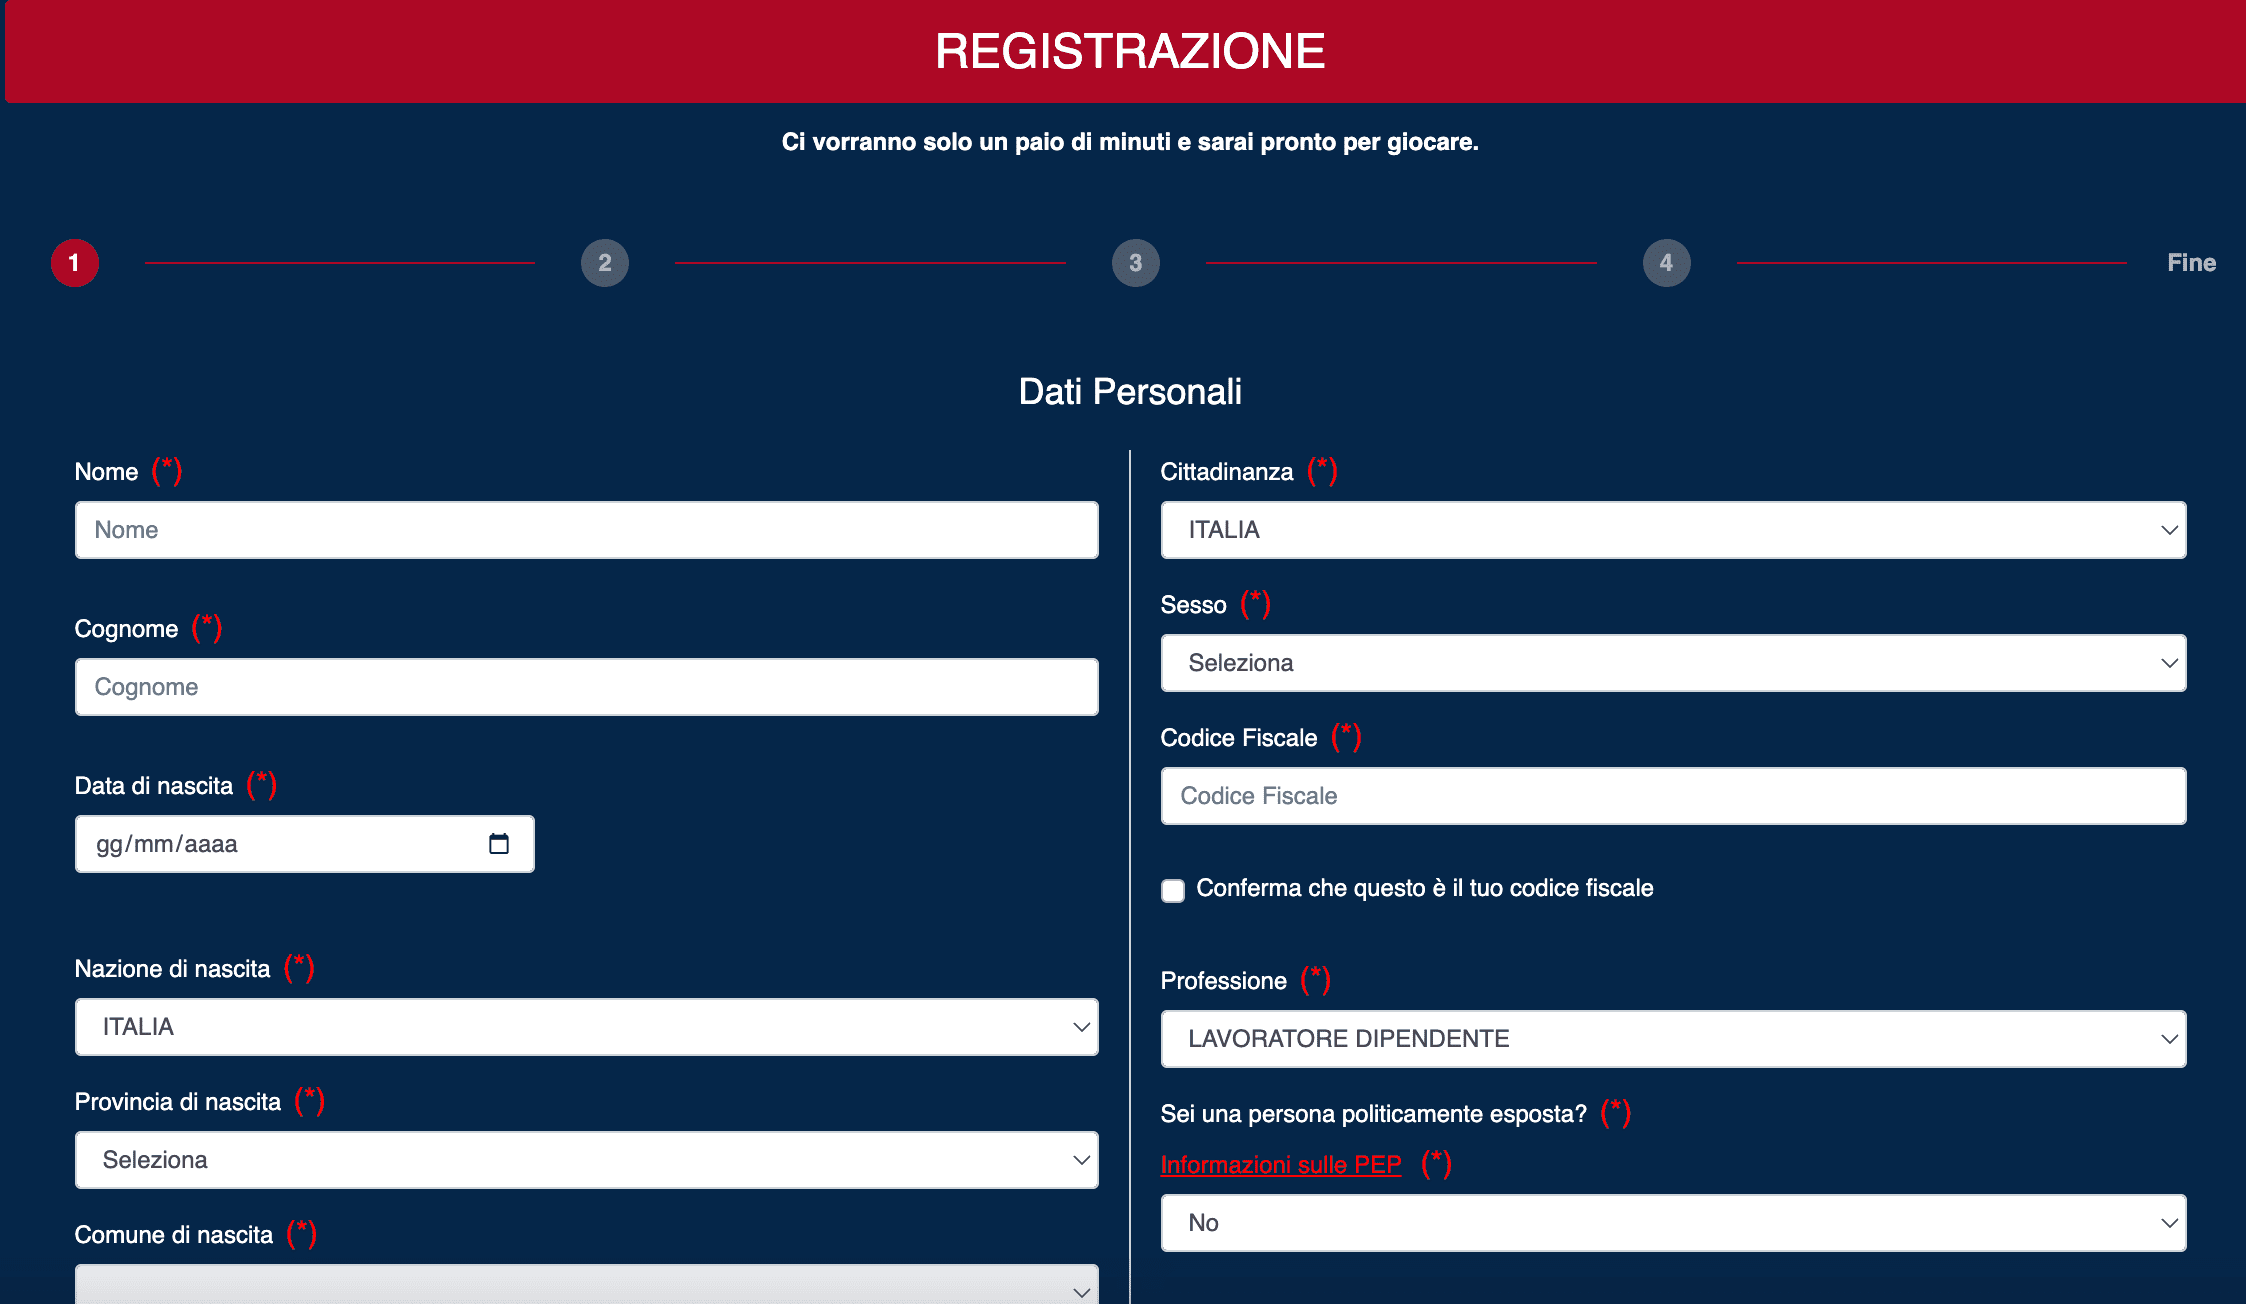 Cagliari.bet Registrazione